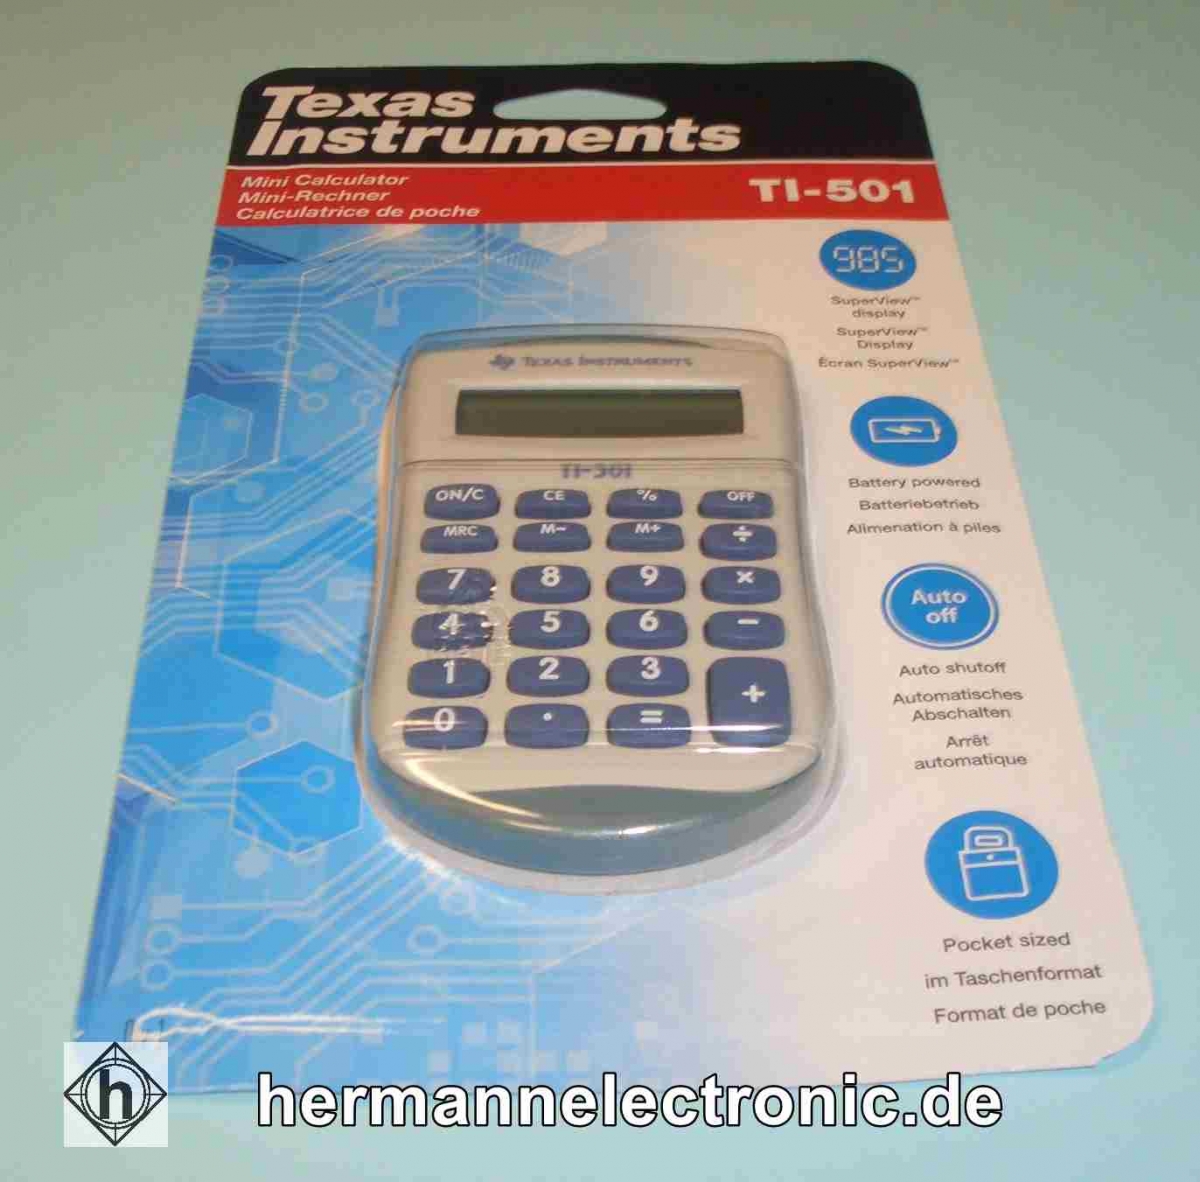 Texas InstrumentsTaschenrechner TI-501 Displayanzeige: 8 Zeichen